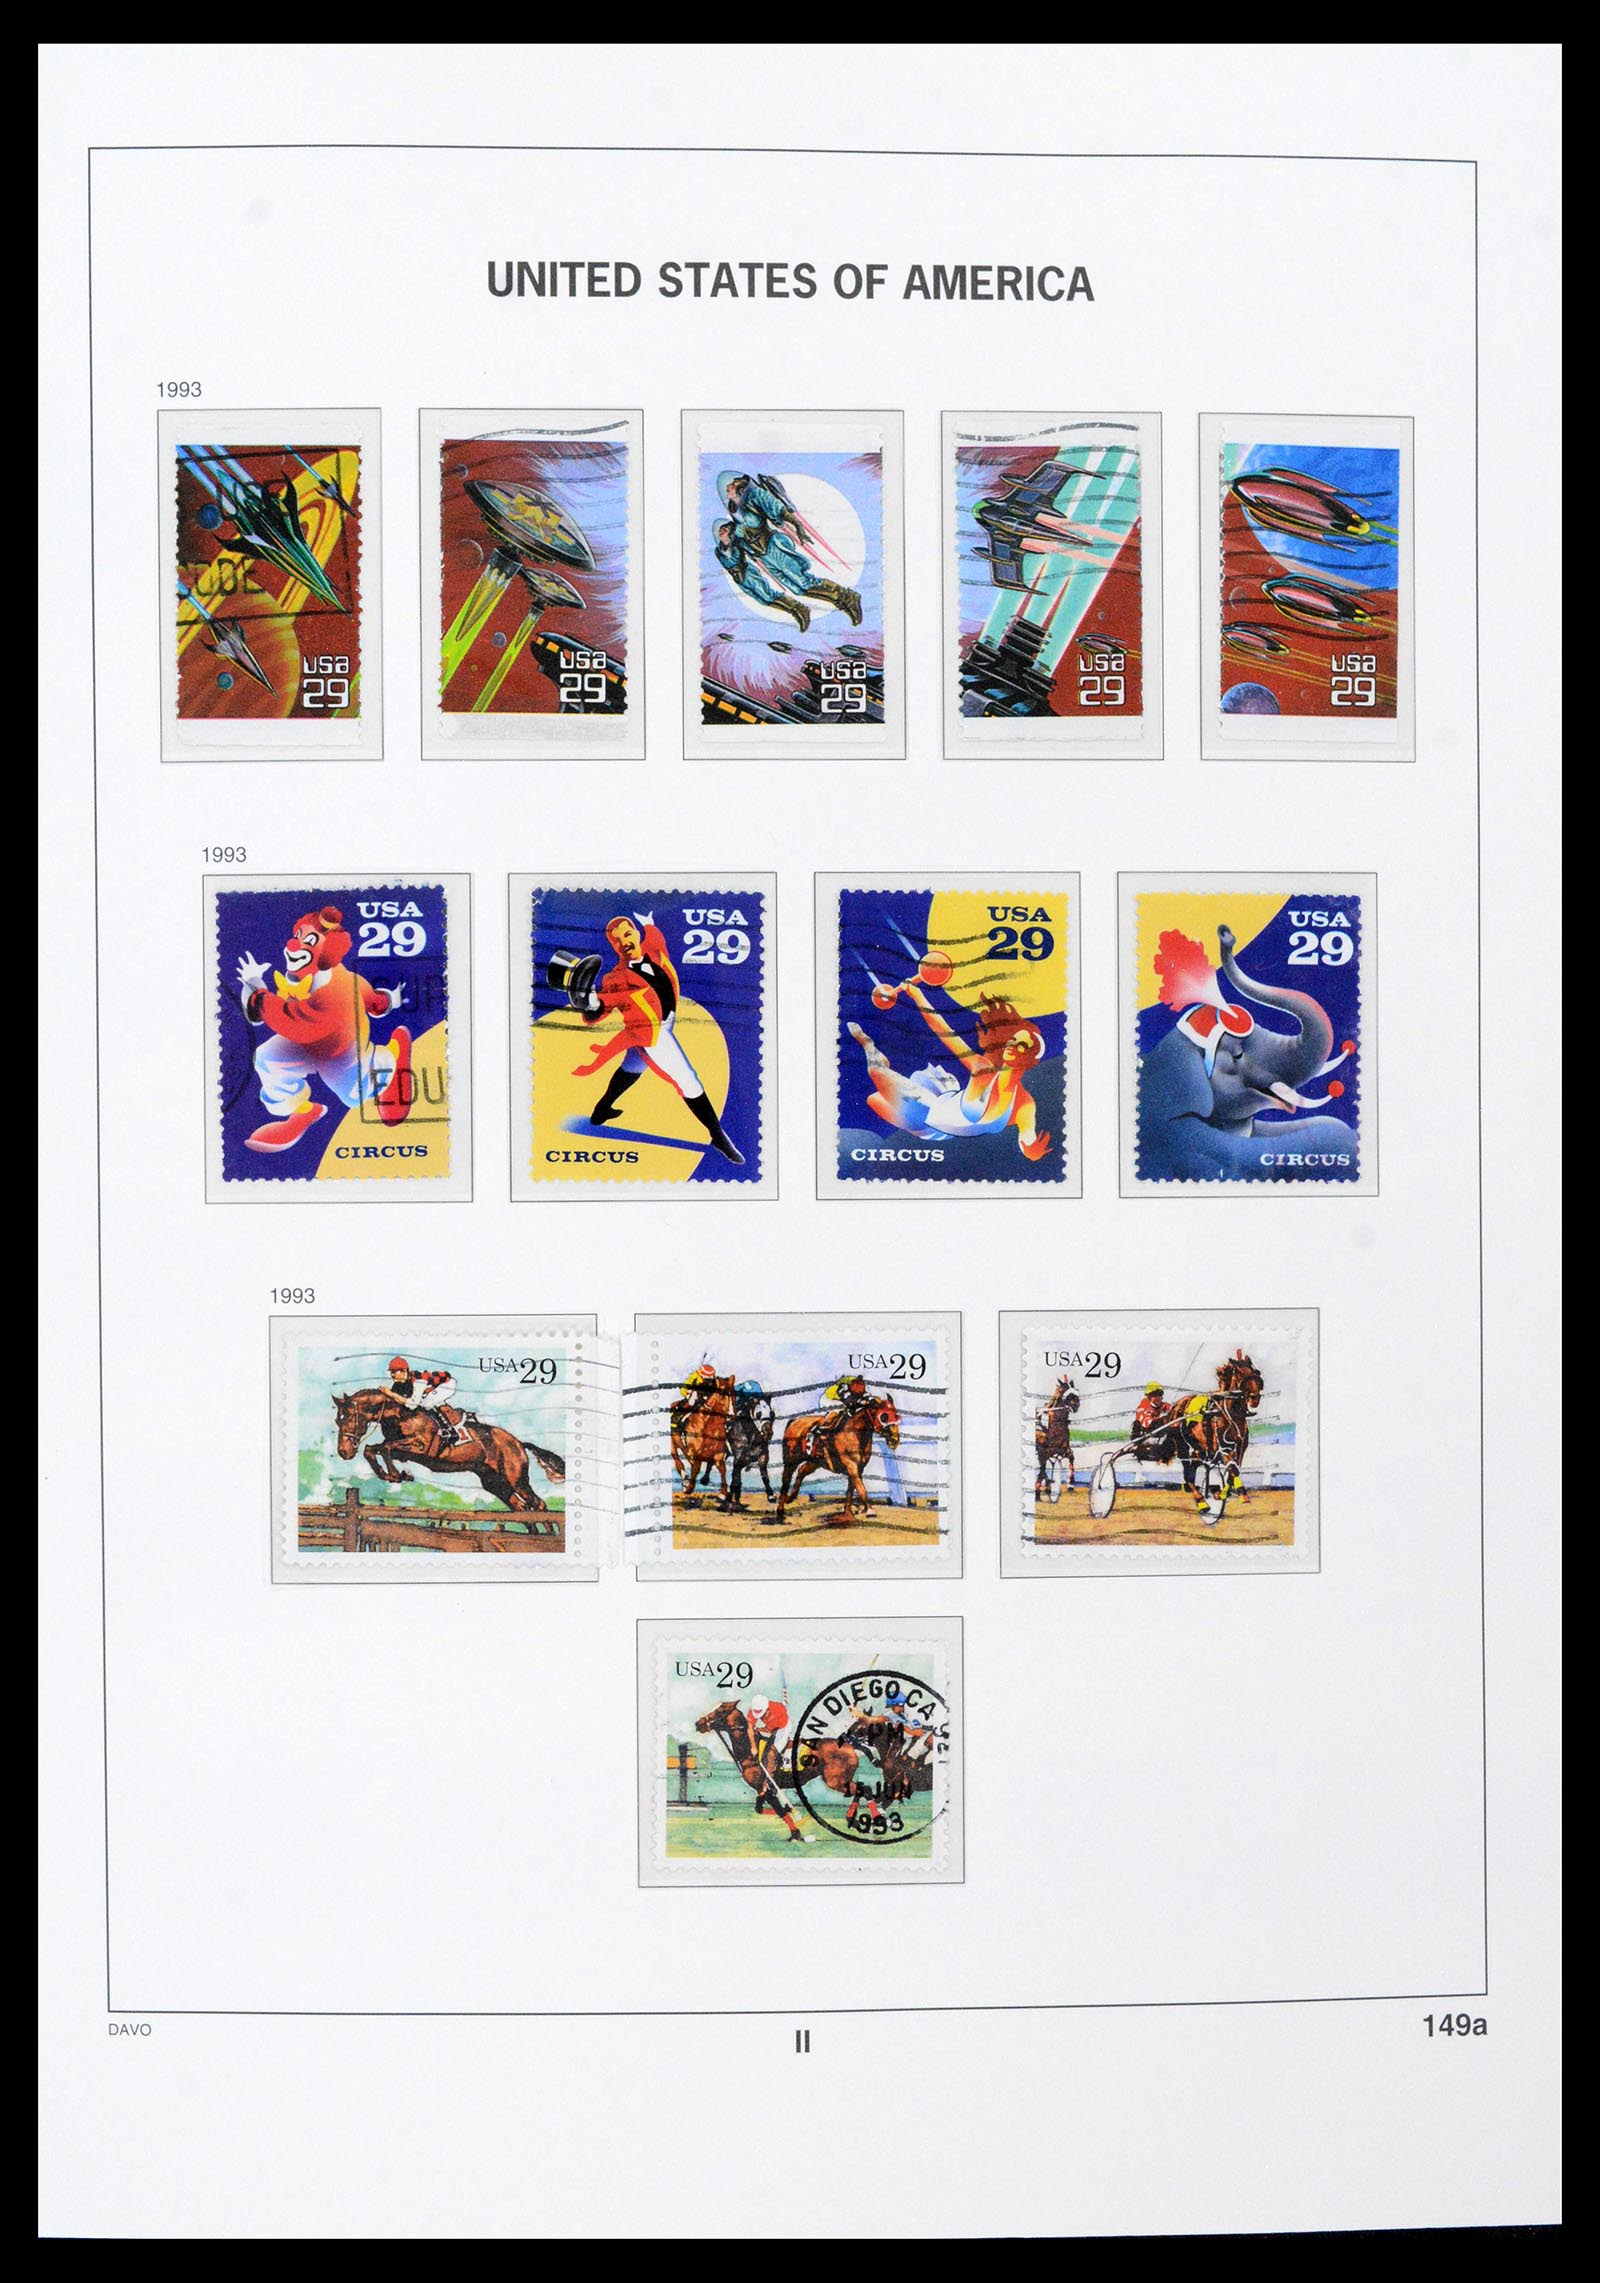 39349 0032 - Stamp collection 39349 USA 1989-2021!